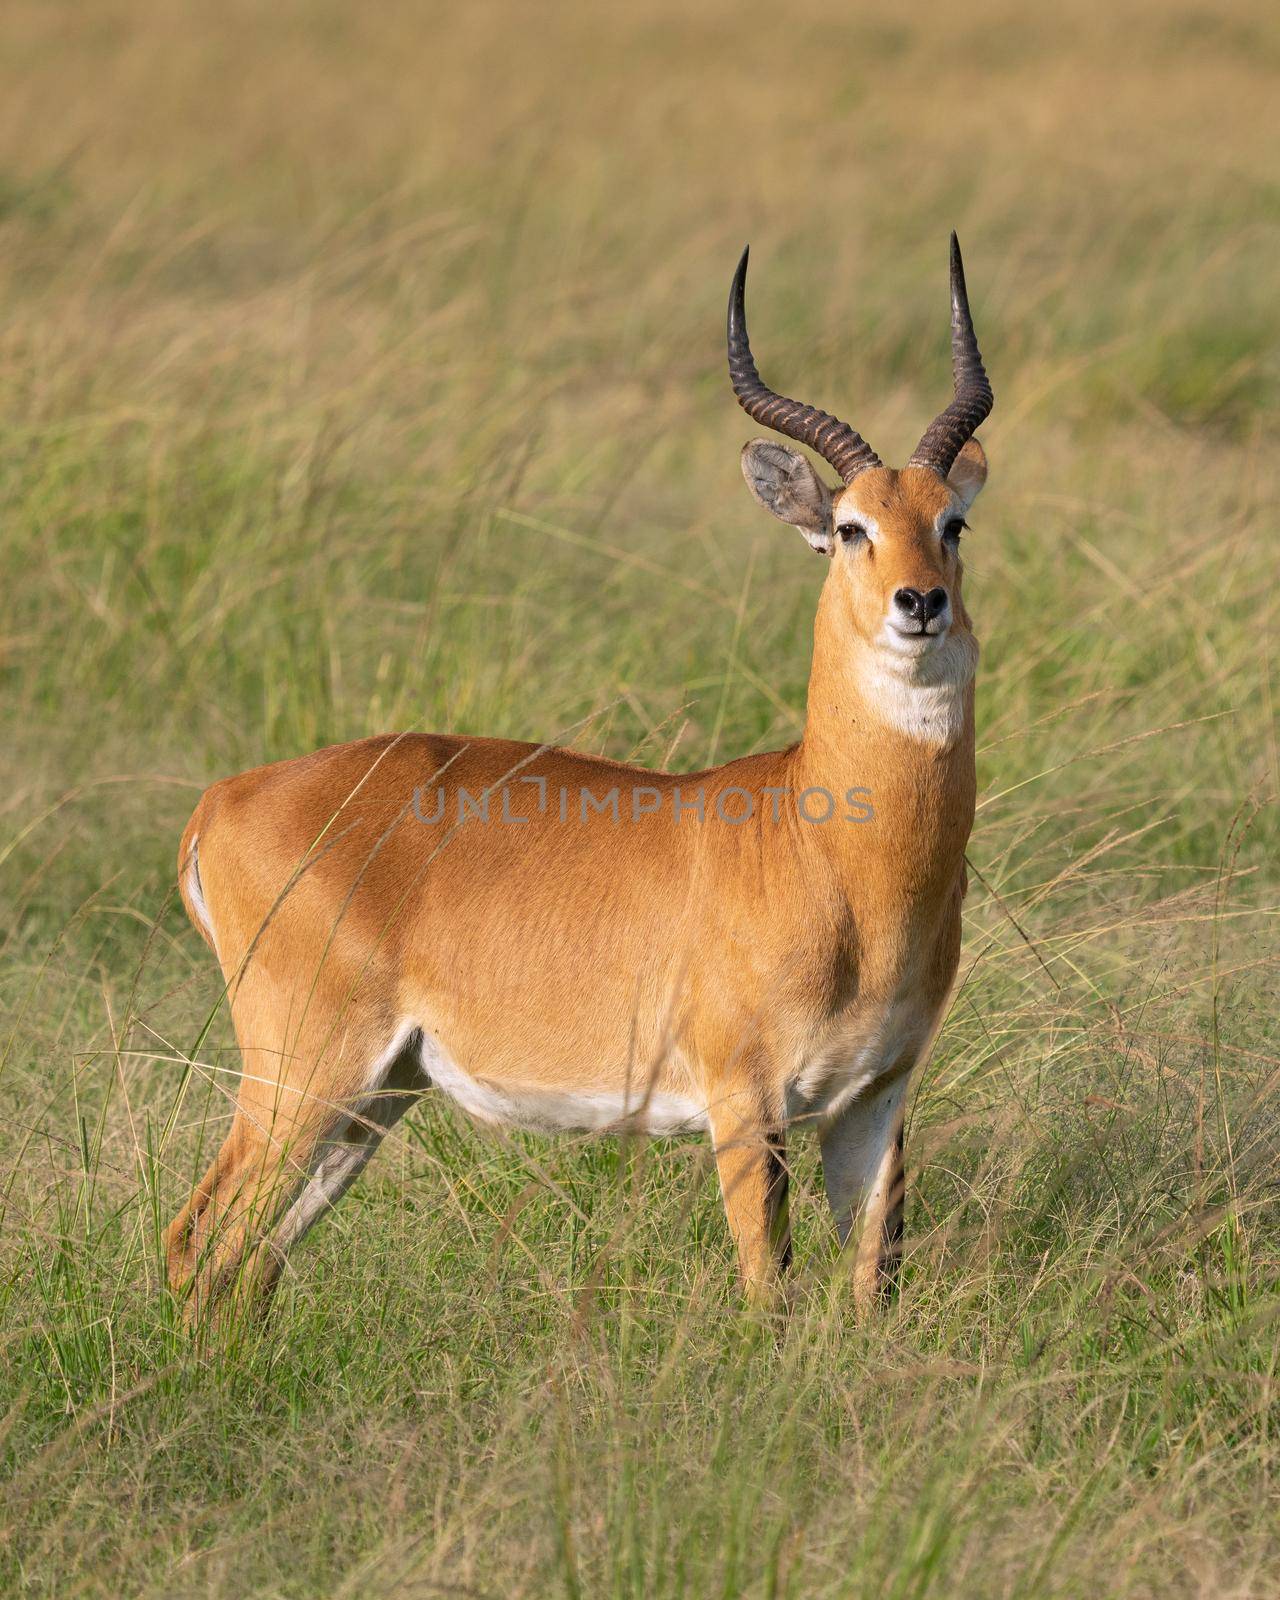 Uganda Kob (Kobus thomasi), Queen Elizabeth National Park, Uganda